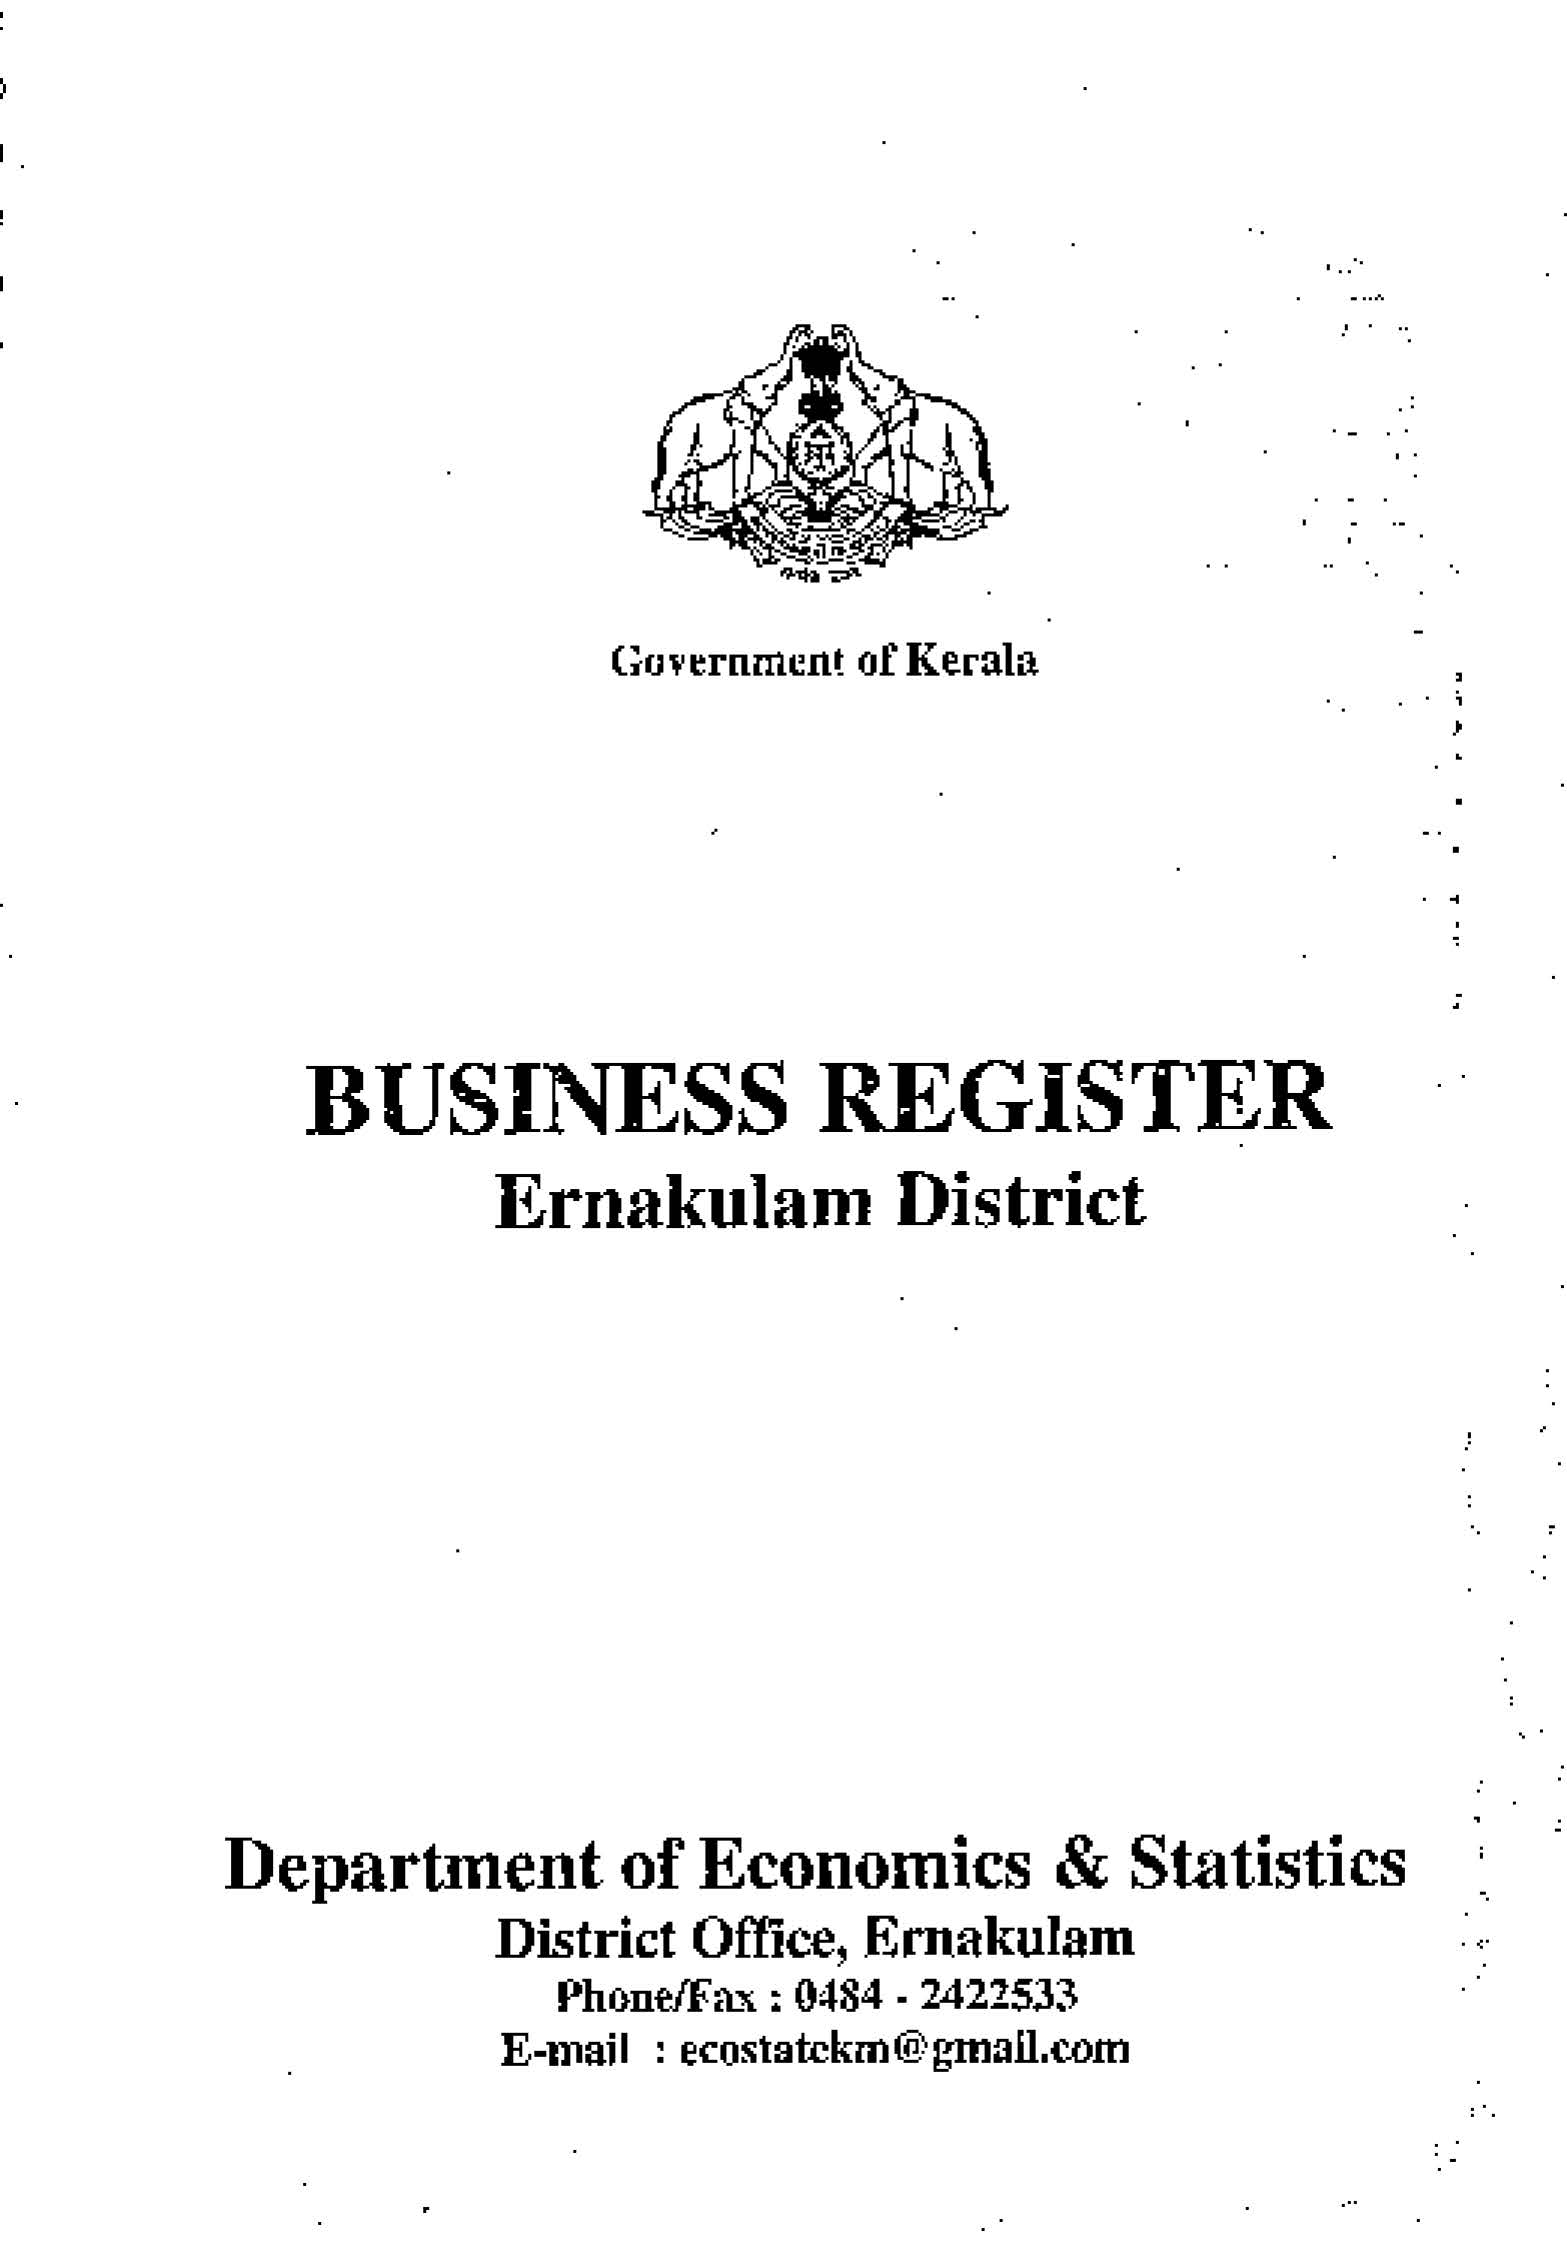 Business Register Ernakulam District